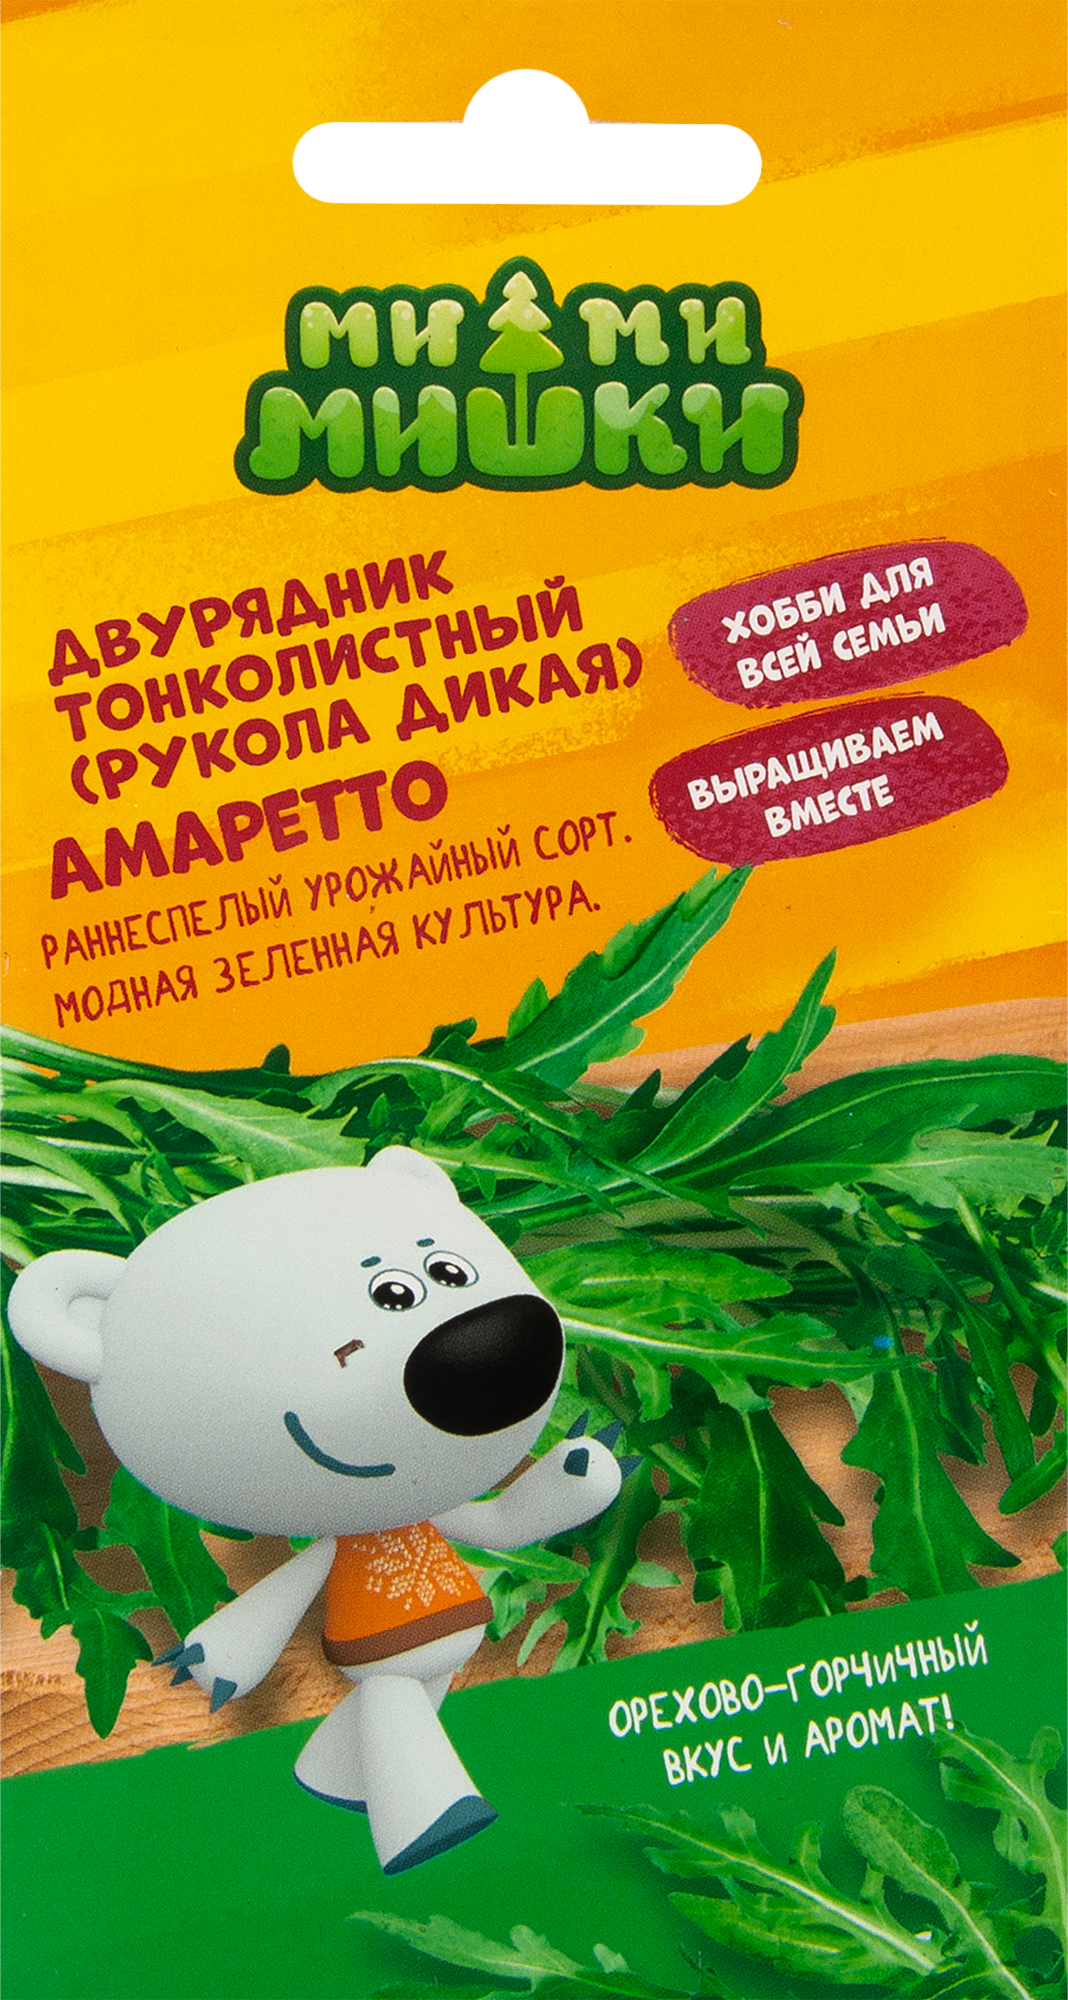 Двурядник тонколистный Ми-ми-мишки Амаретто в Москве – купить по низкойцене в интернет-магазине Леруа Мерлен